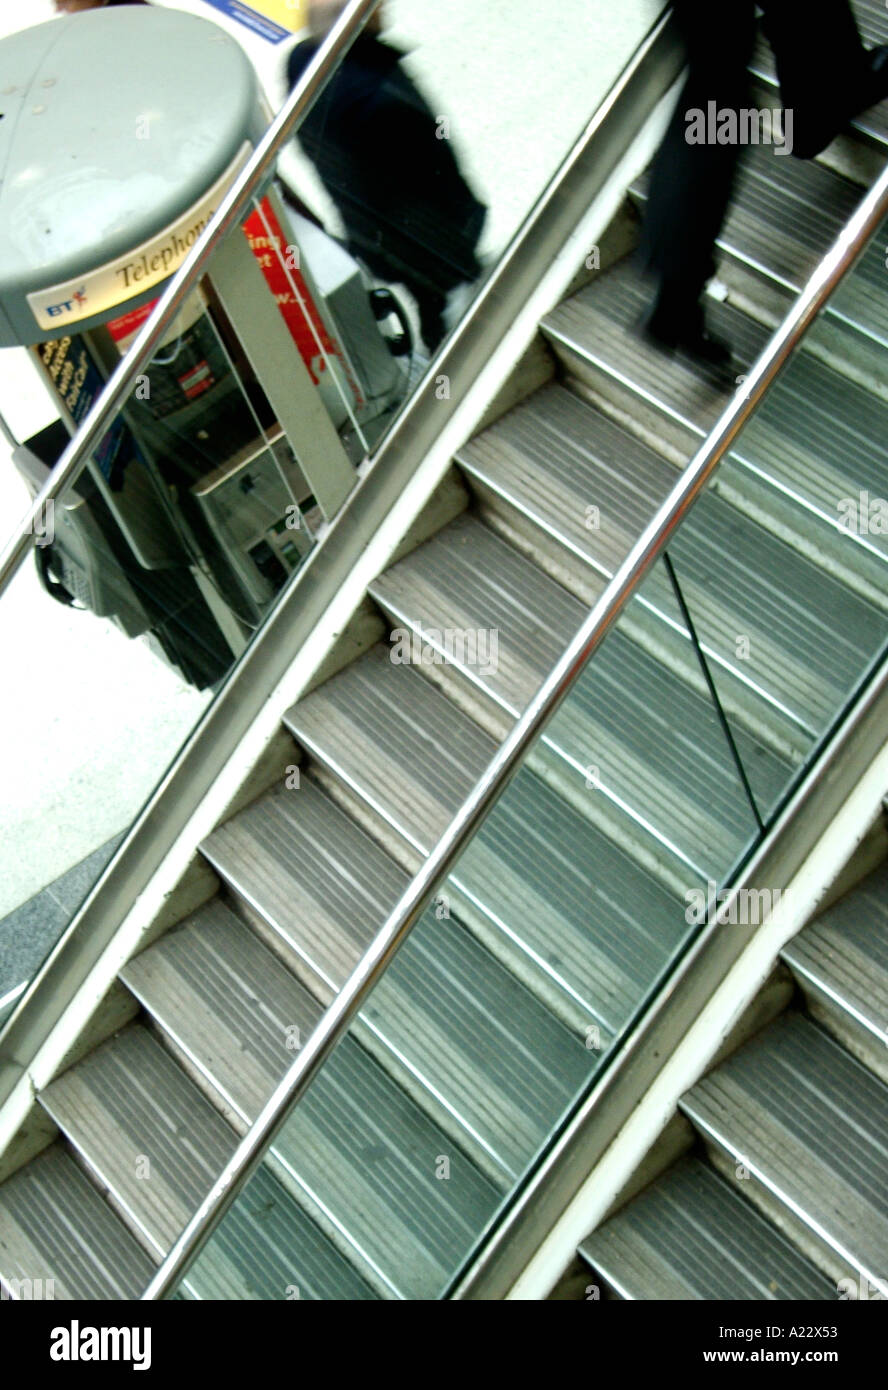 Escalera recta Liverpool con barandilla de aluminio